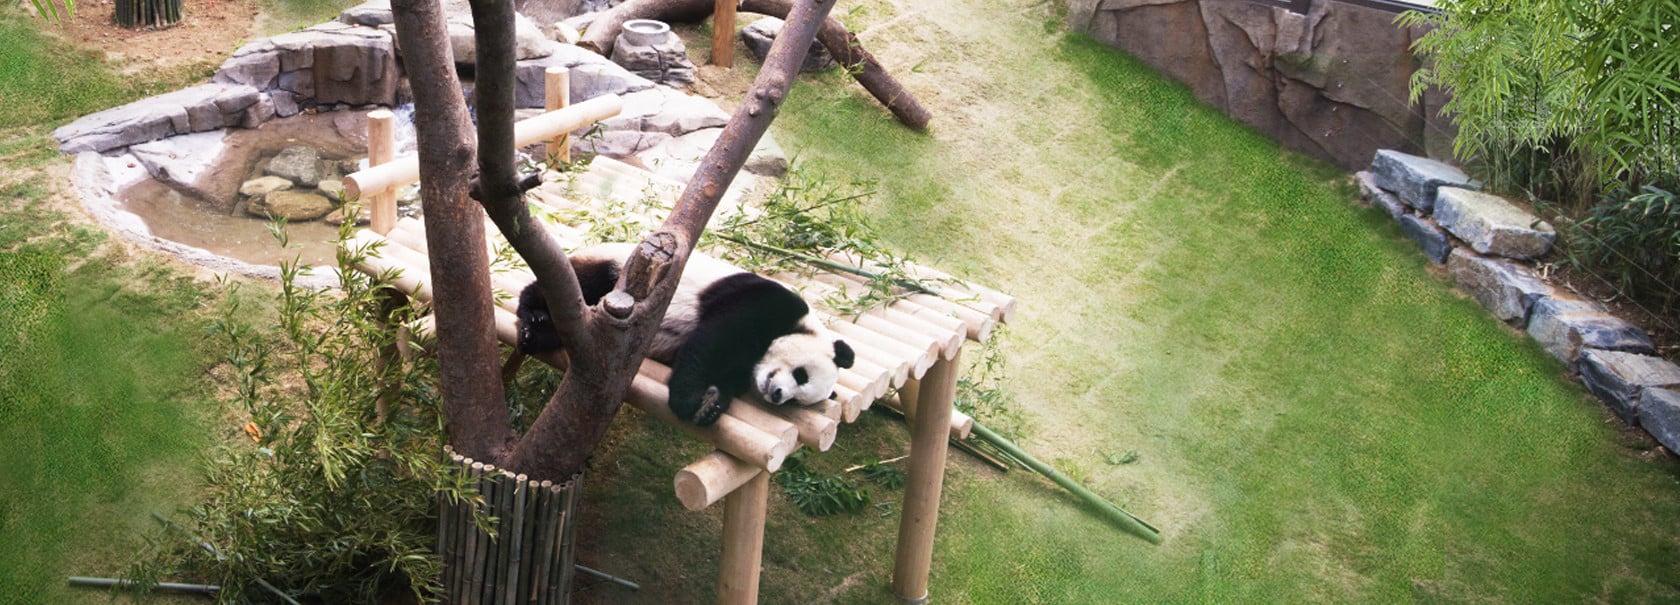 Everland Resort feiert Eröffnung von Panda World